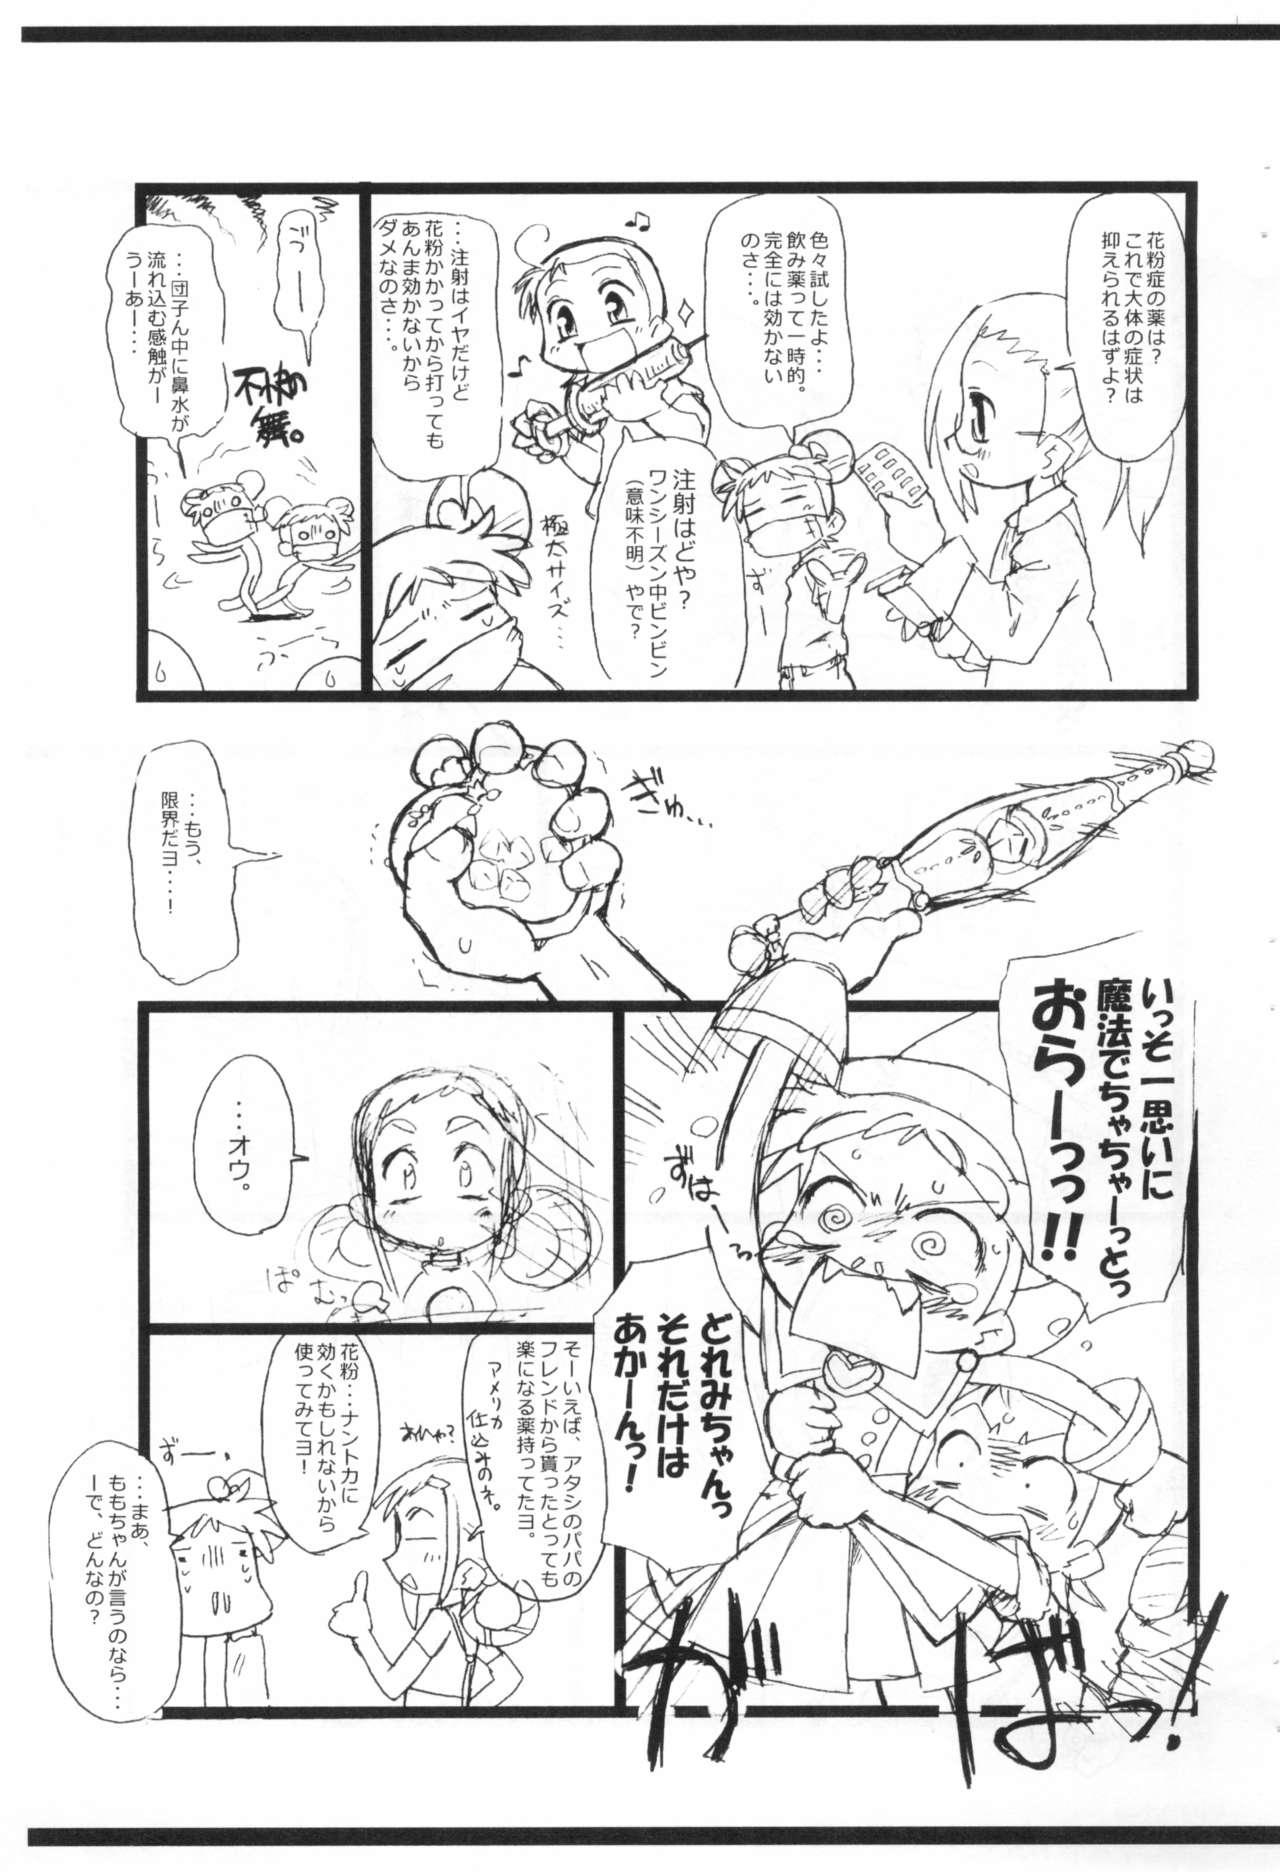 Buttfucking Kafun to Kiseichuu to Majo Minarai. - Ojamajo doremi | magical doremi Free Blow Job Porn - Page 5